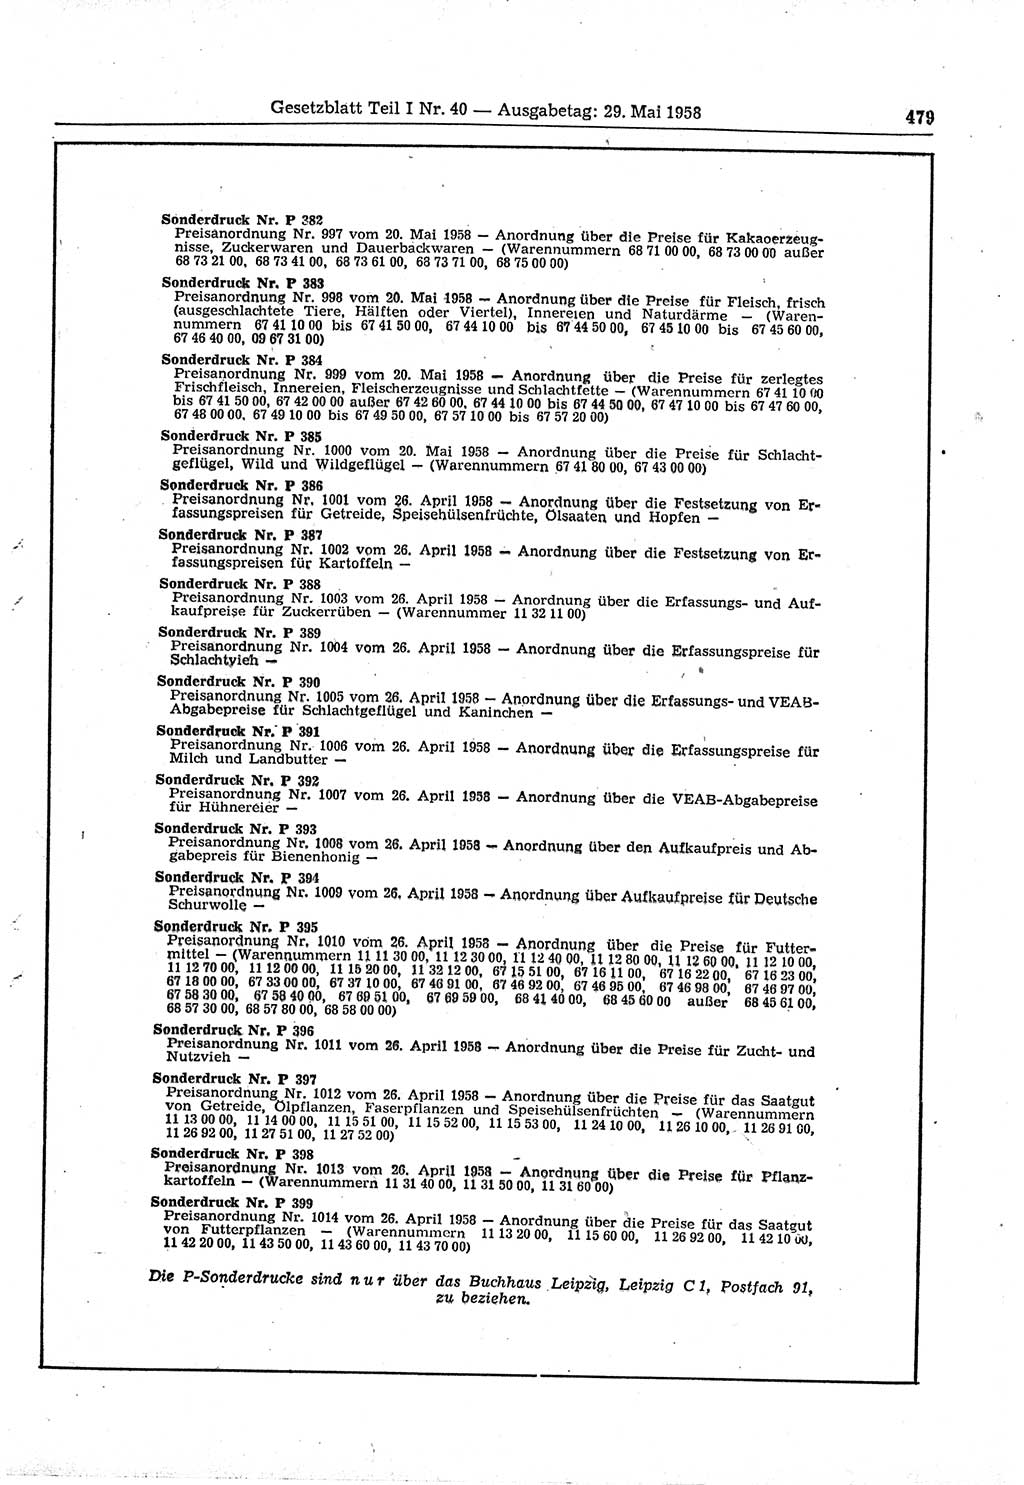 Gesetzblatt (GBl.) der Deutschen Demokratischen Republik (DDR) Teil Ⅰ 1958, Seite 479 (GBl. DDR Ⅰ 1958, S. 479)